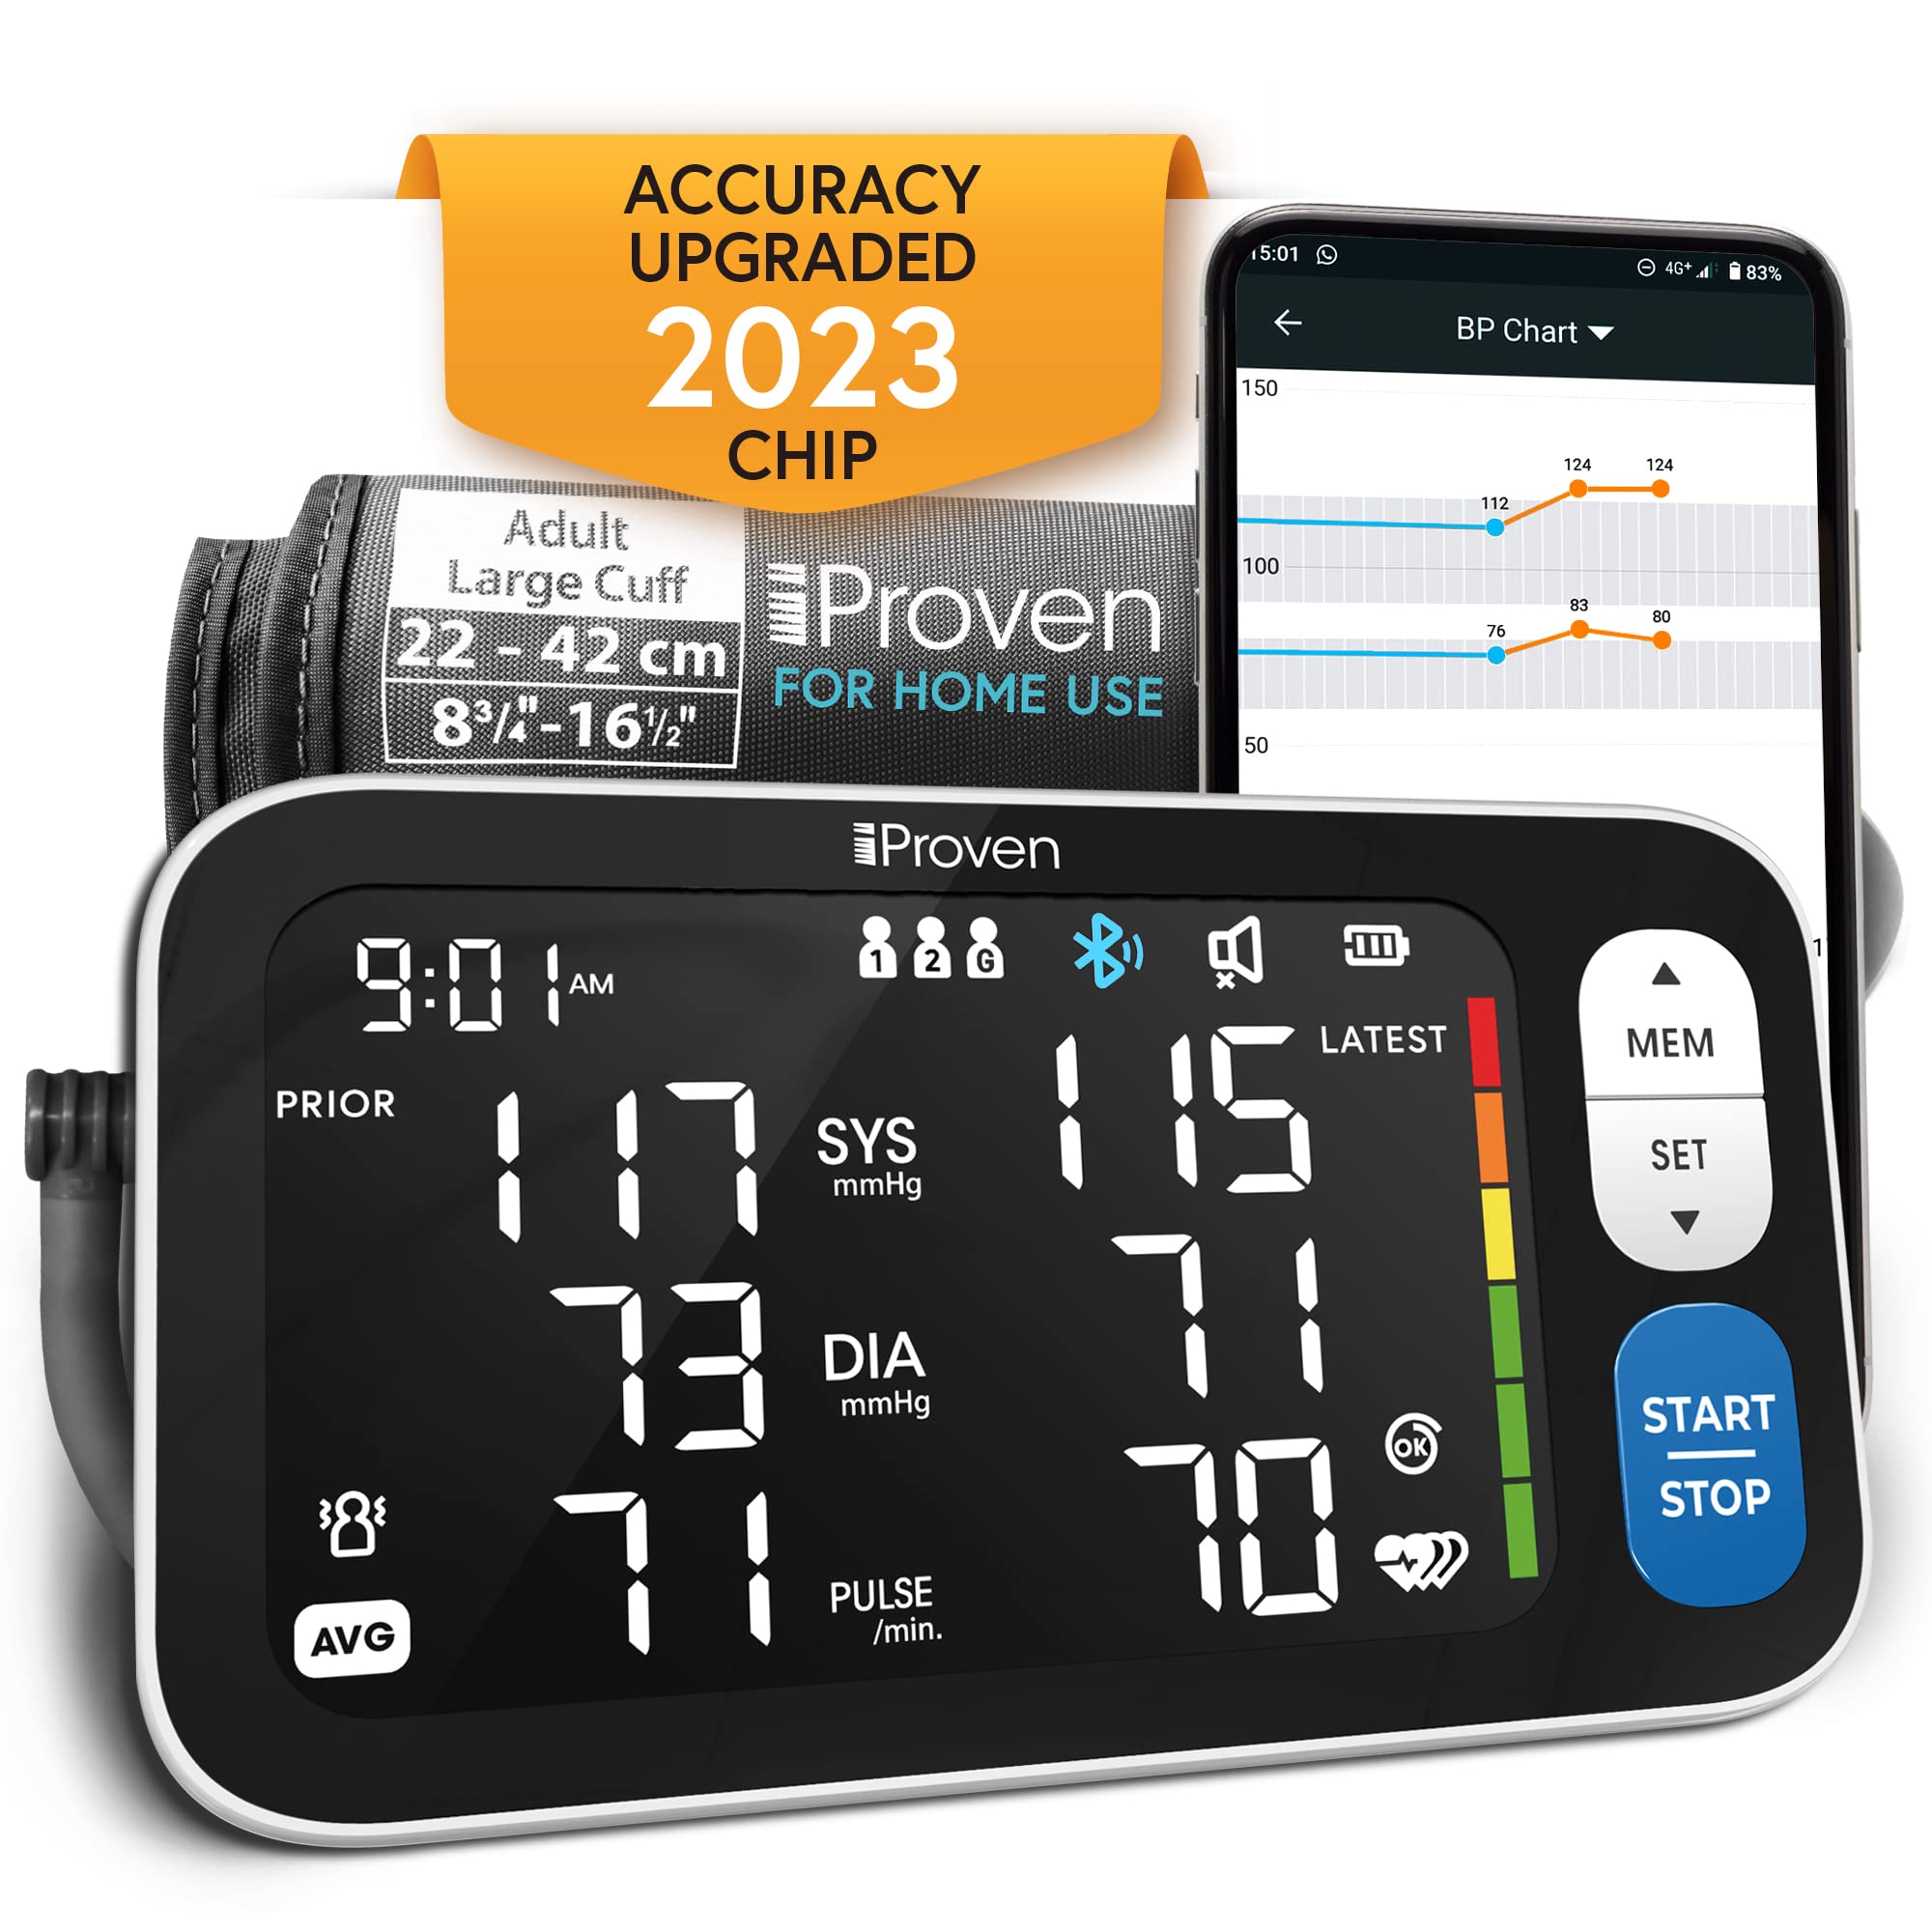 Omron Platinum Blood Pressure Monitor - Best Price in Singapore - Dec 2023